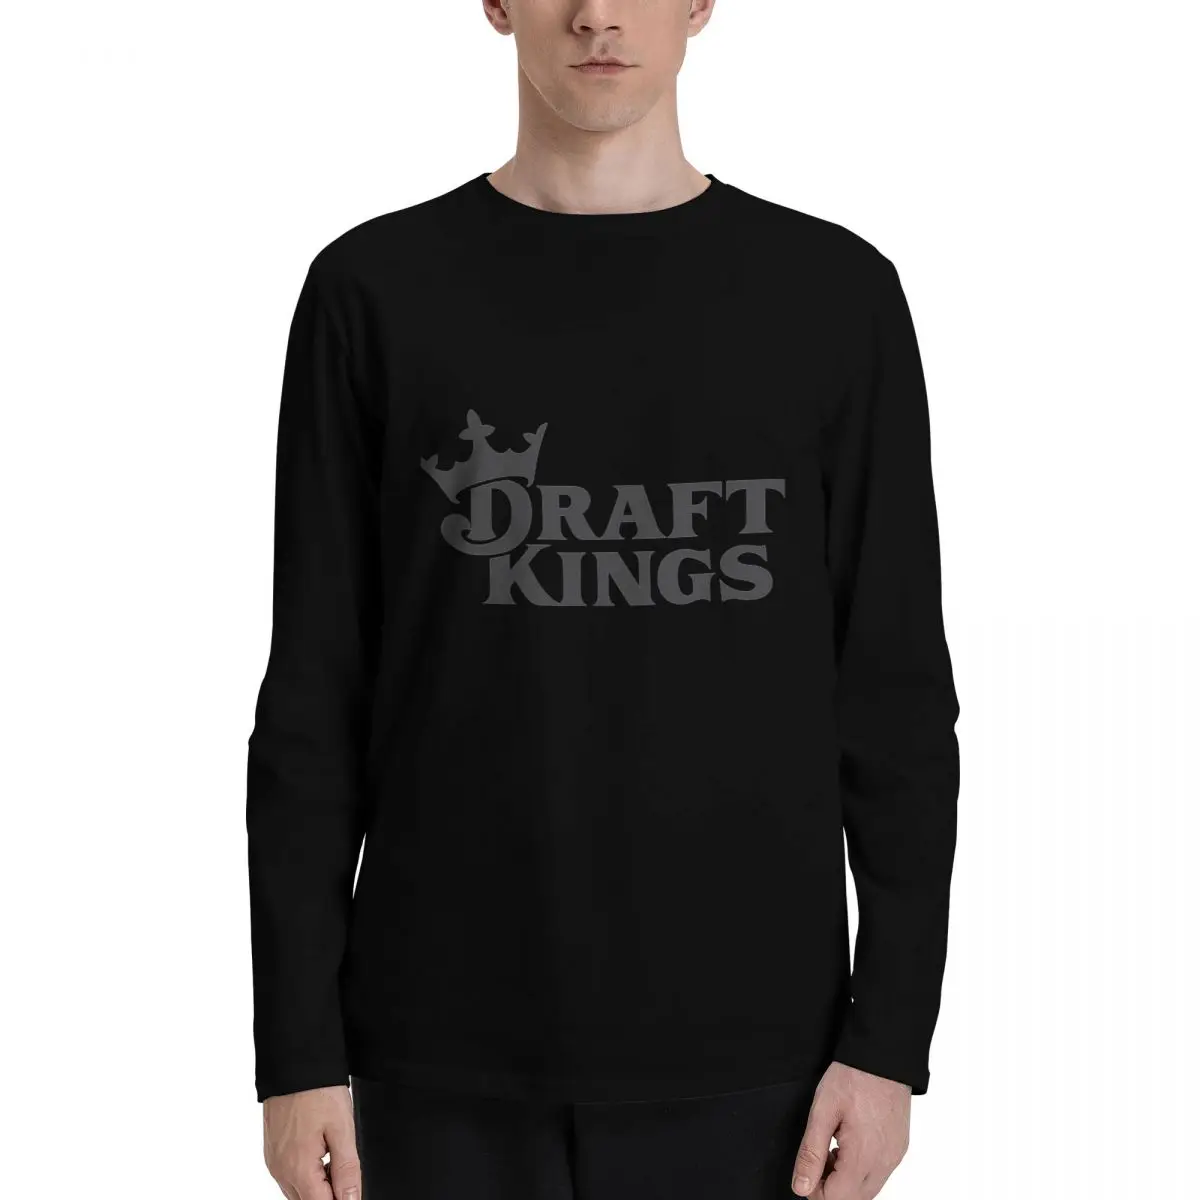 Draft kings любят классические футболки с длинным рукавом, винтажную одежду, пустые футболки, спортивные рубашки, мужскую одежду